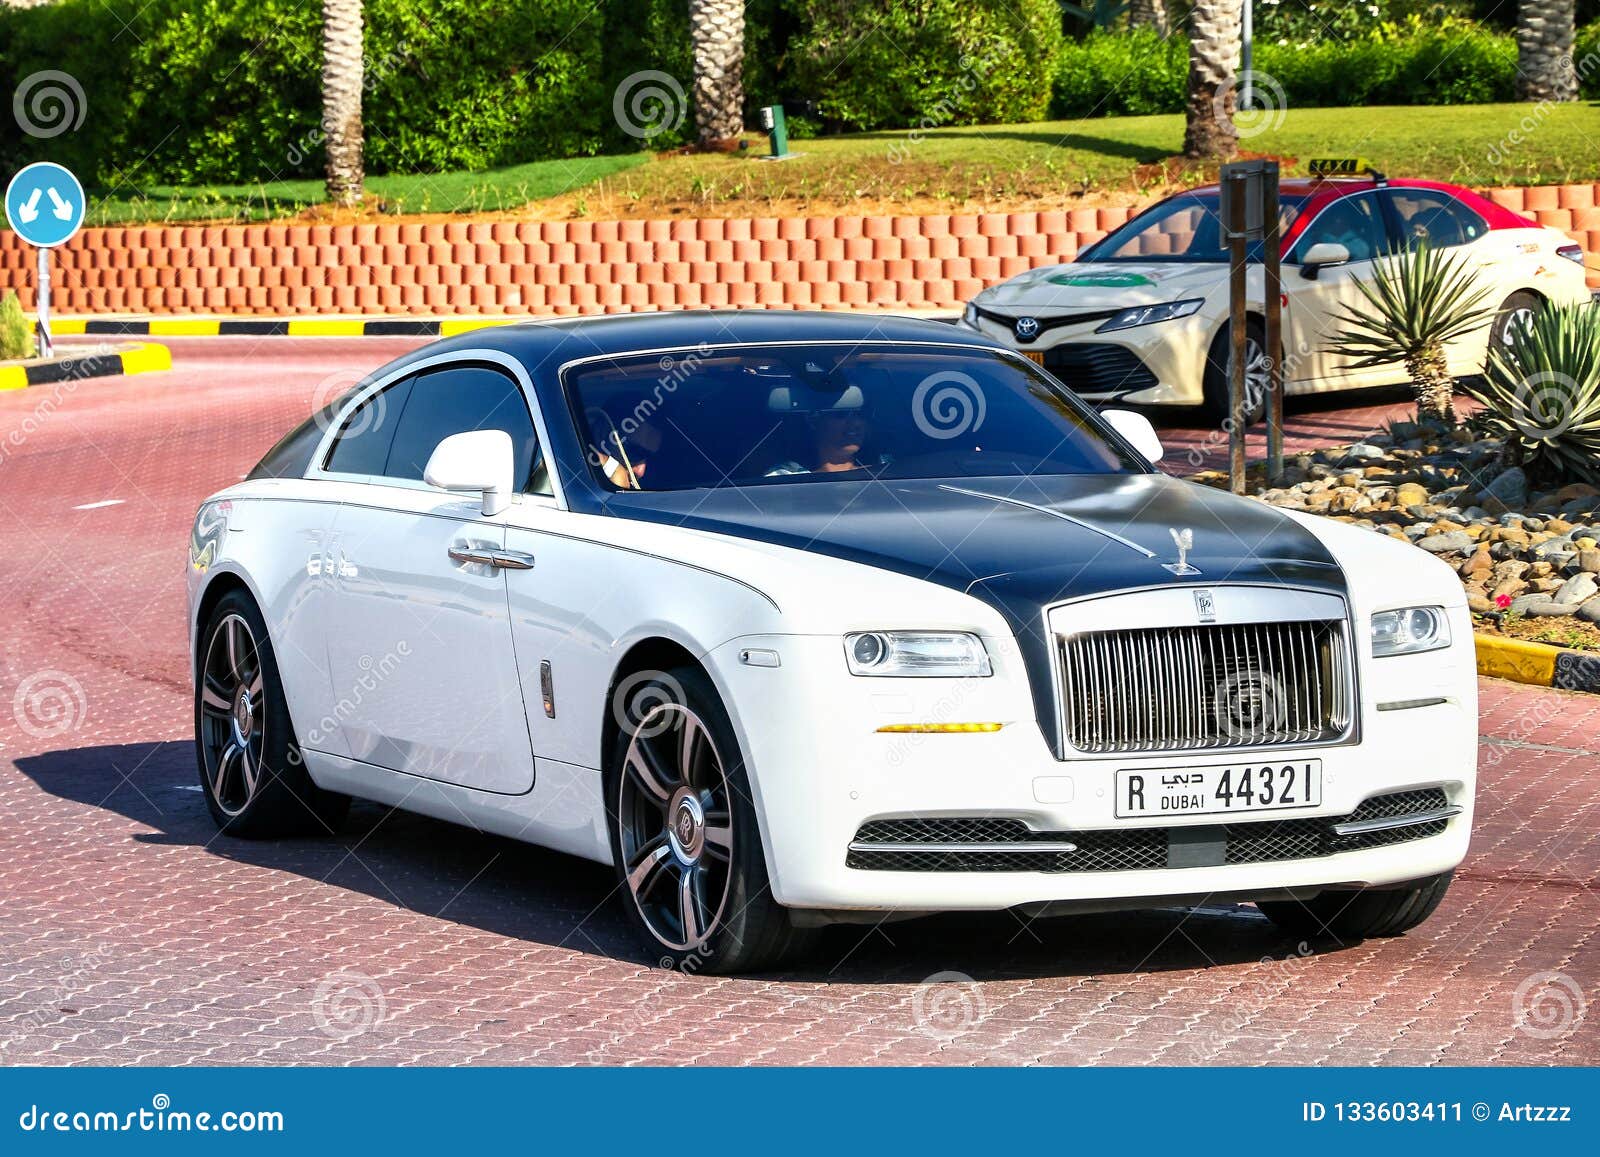 Rolls Royce in Dubai Stock Photo  Alamy